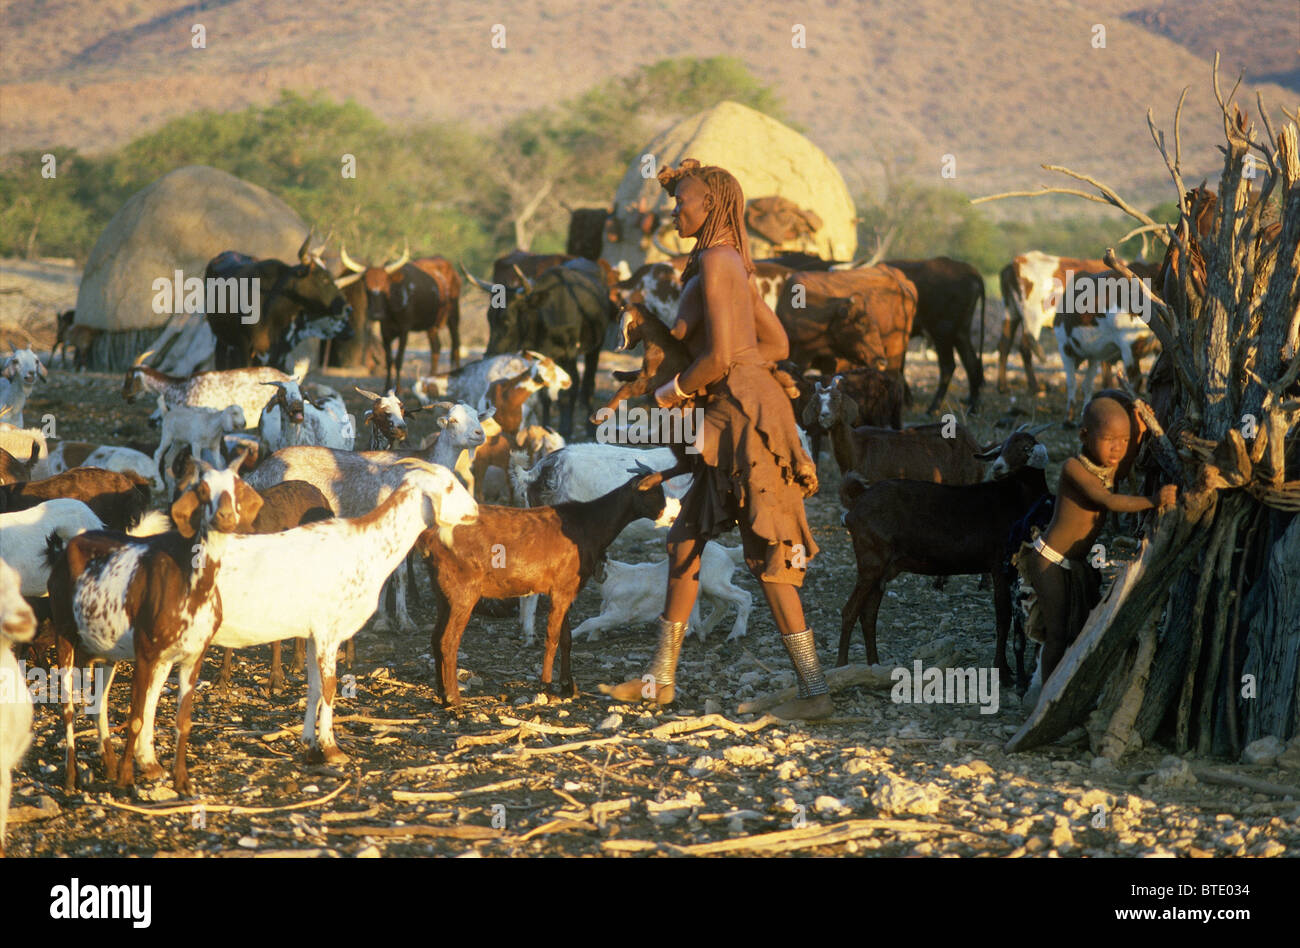 Une grande femme Himba marcher parmi un troupeau de chèvres avec un petit enfant à proximité Banque D'Images